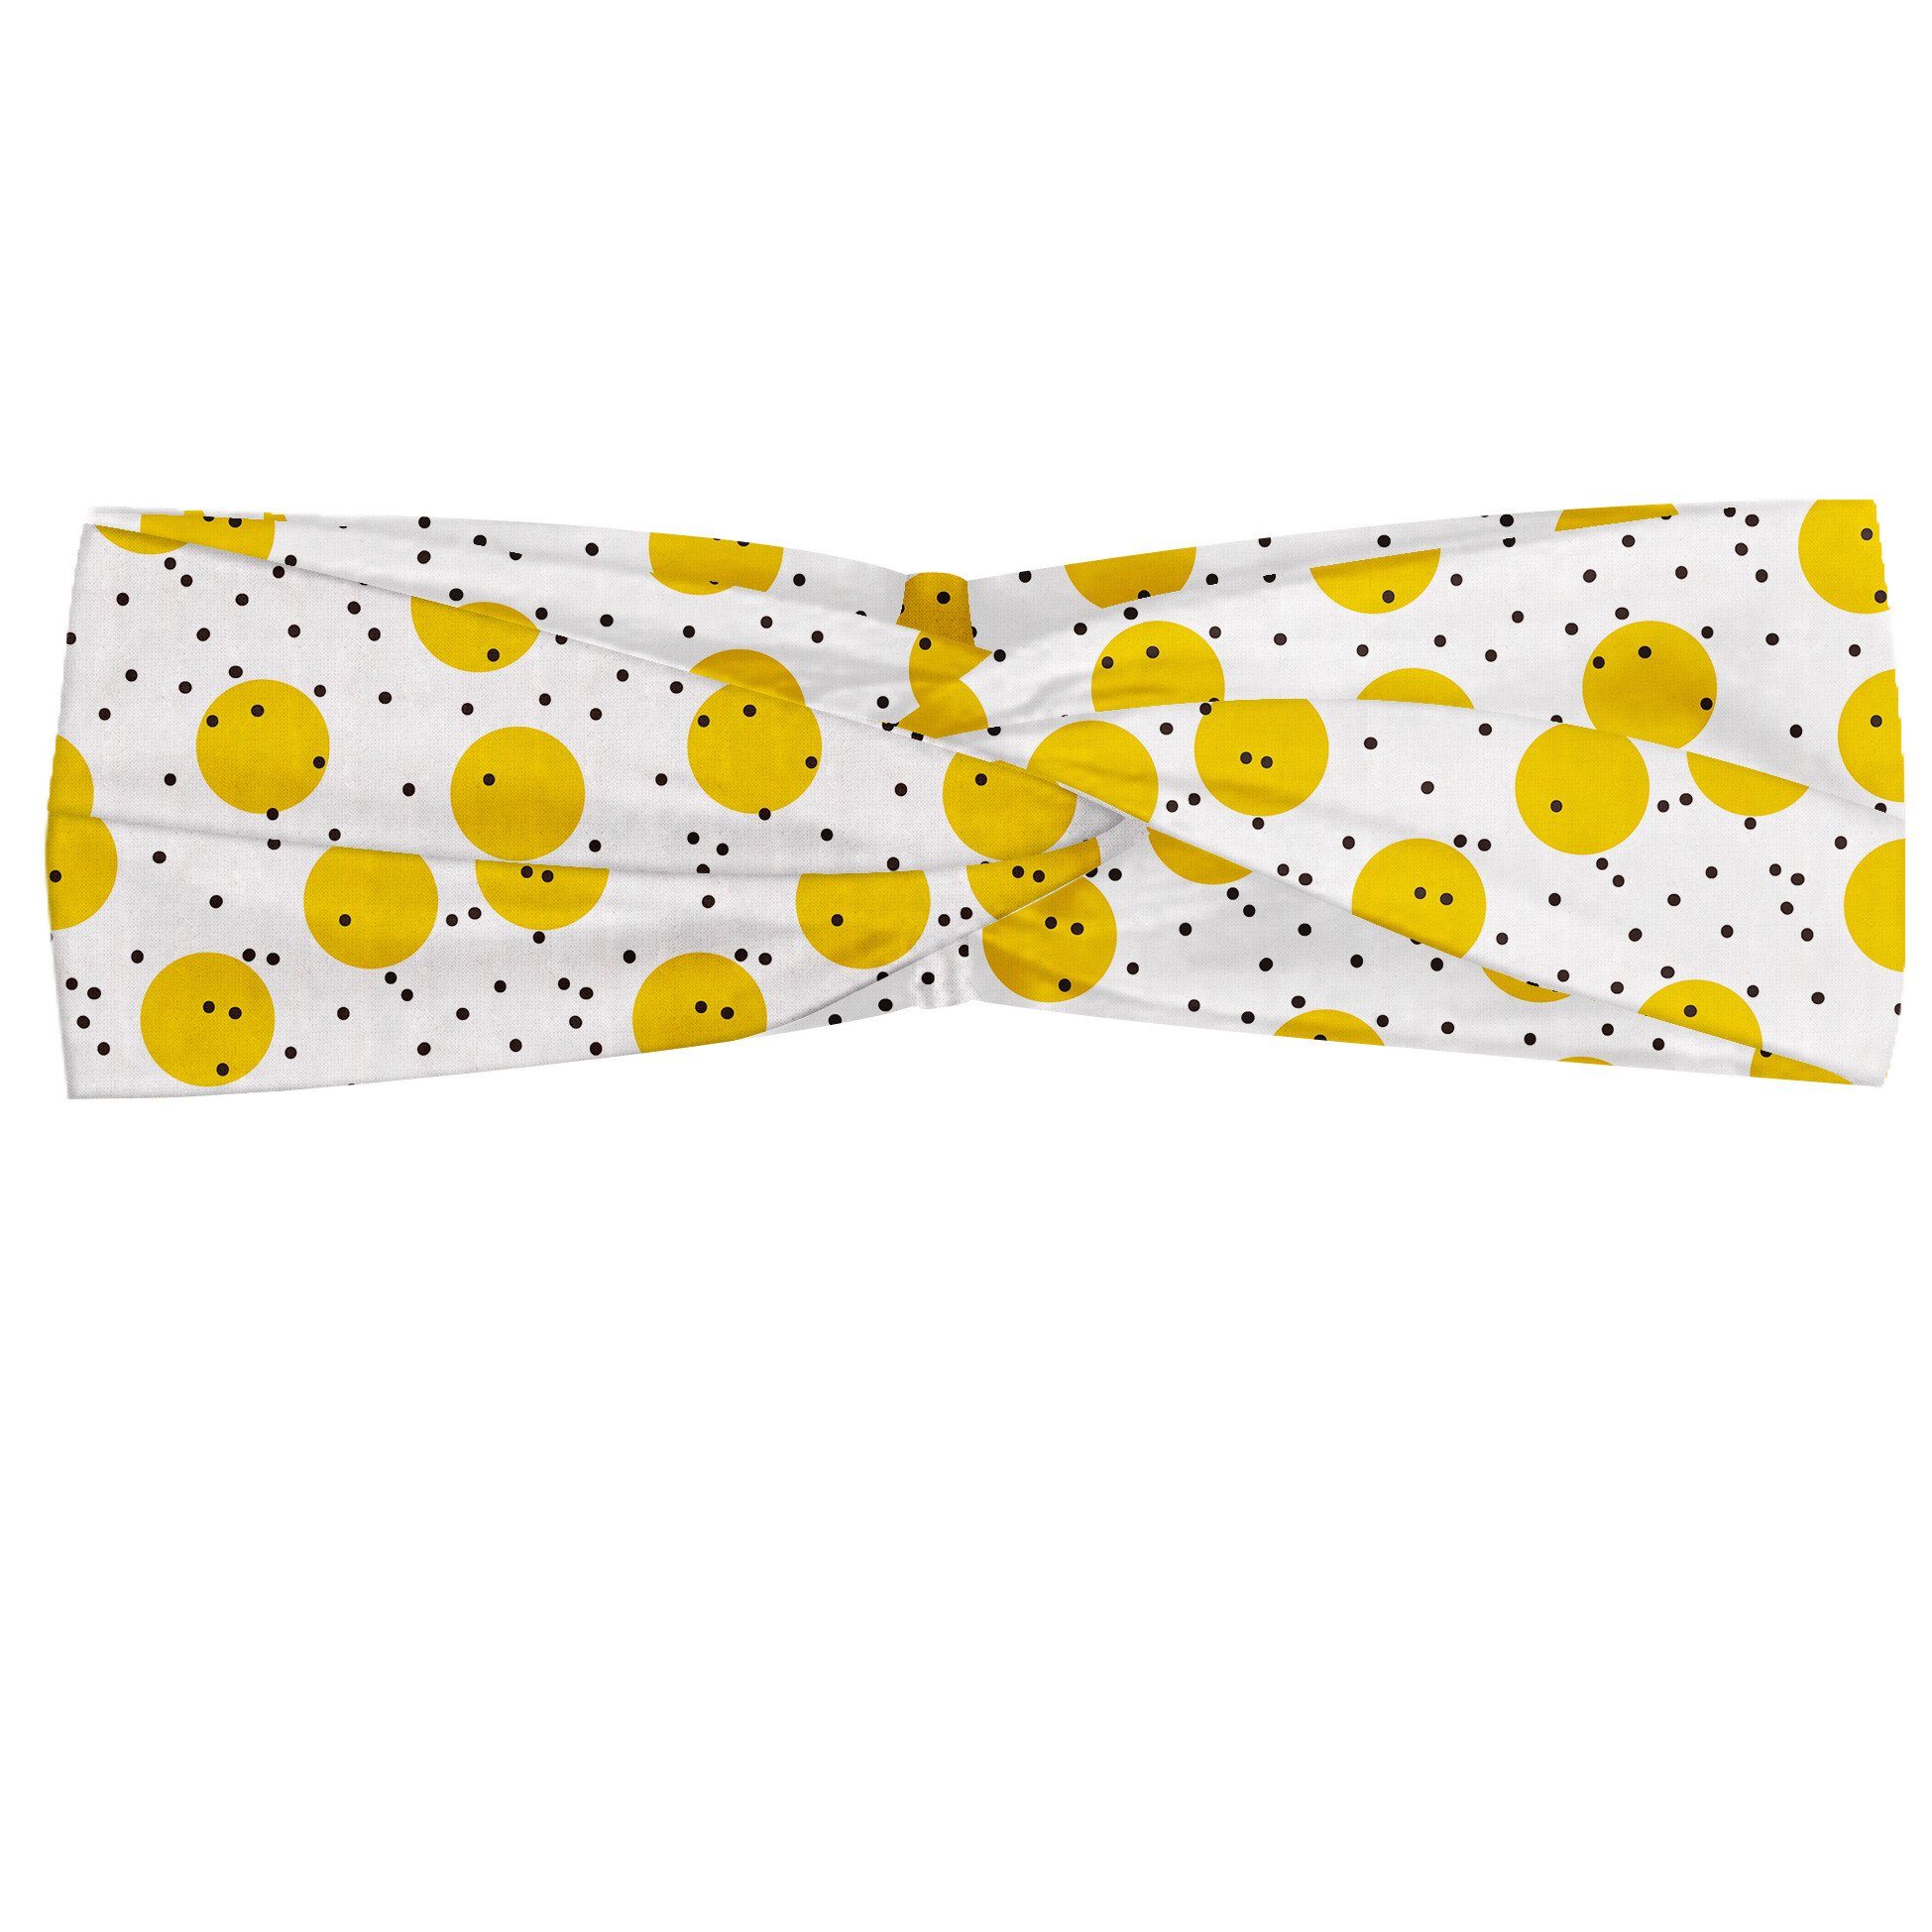 Abakuhaus Stirnband Elastisch und Angenehme alltags accessories Gelb und Weiß große Kreise